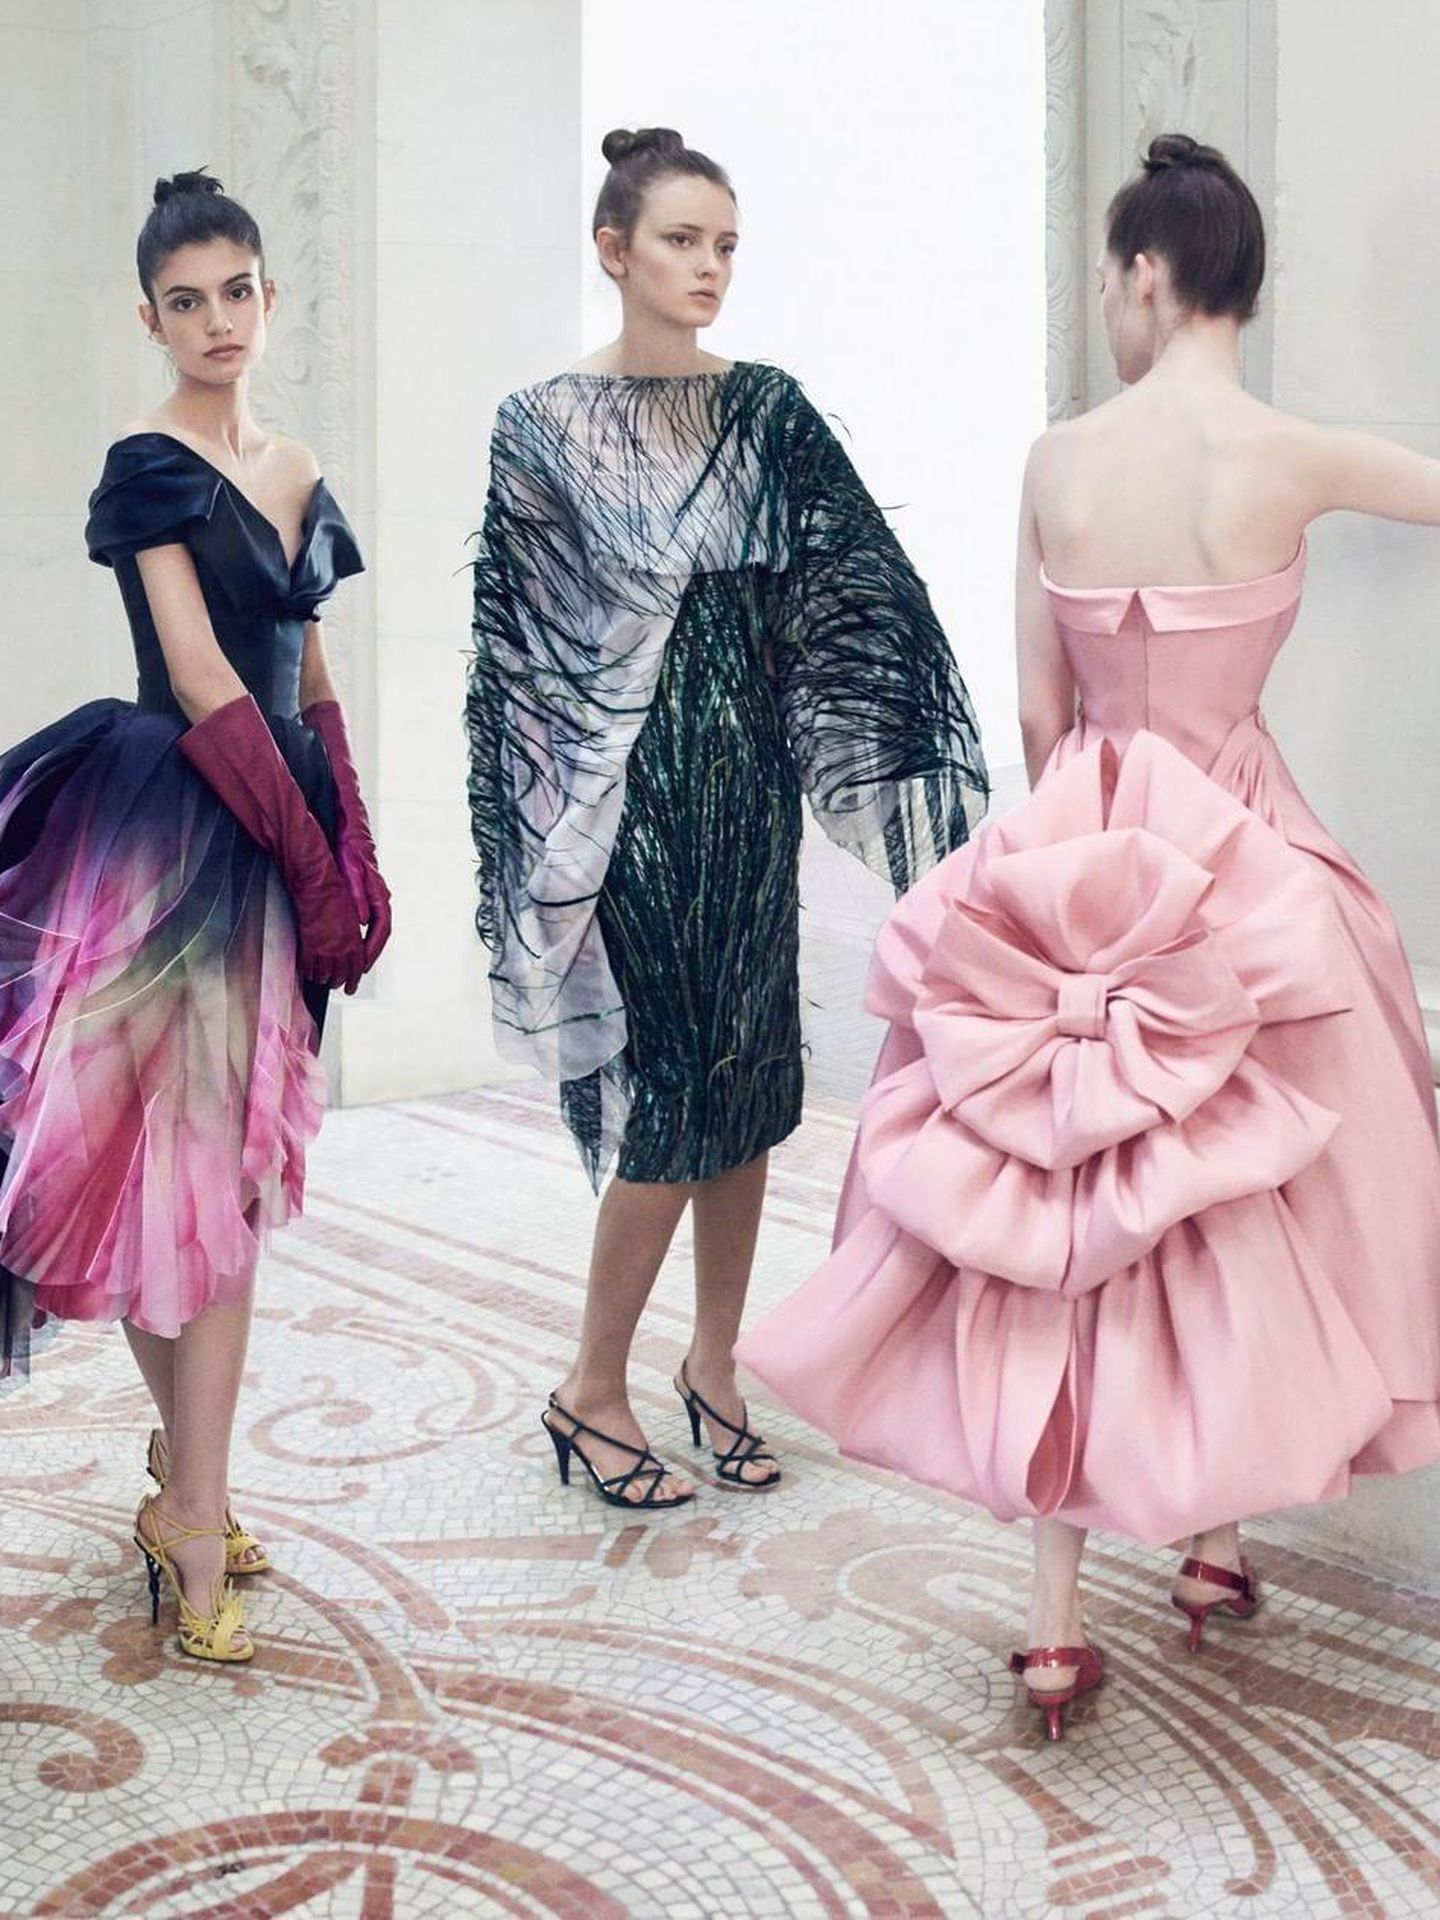 Imagen de Instagram, Christian Dior.